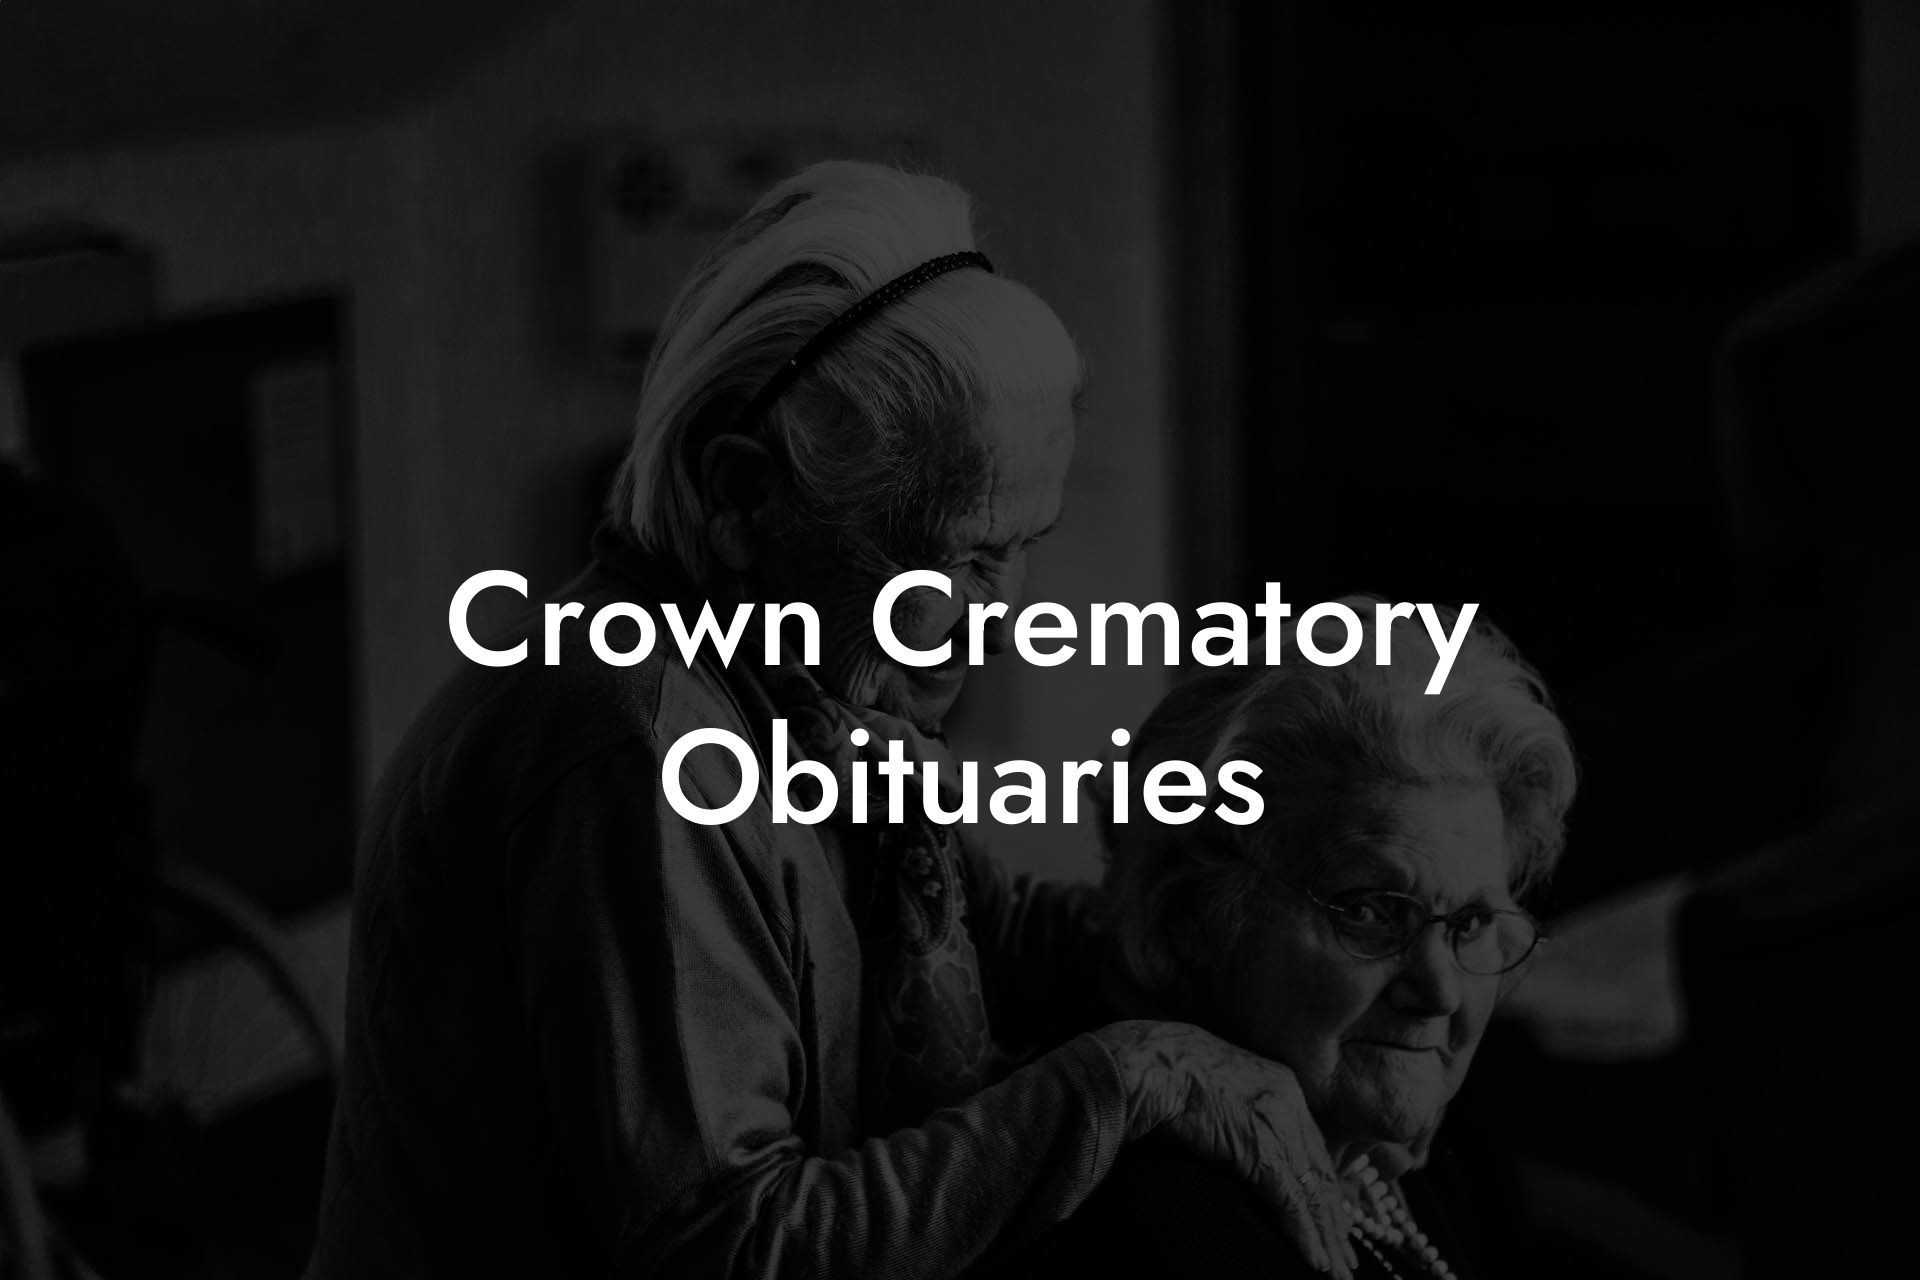 Crown Crematory Obituaries